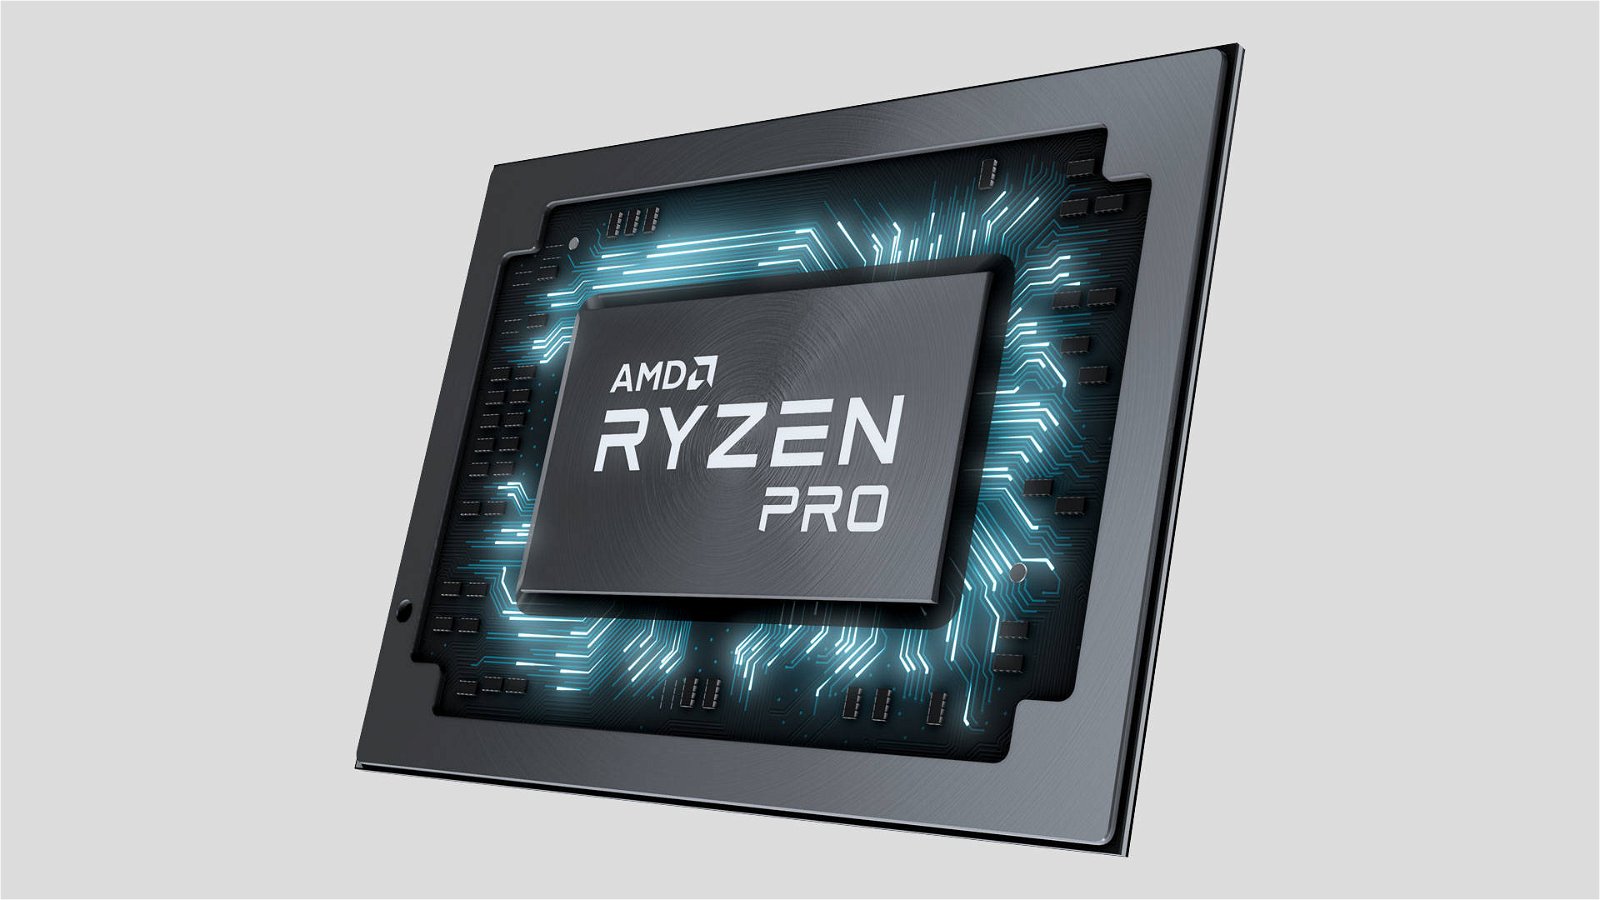 Immagine di AMD Ryzen PRO 3000, i processori Zen 2 arrivano nei PC business e commerciali